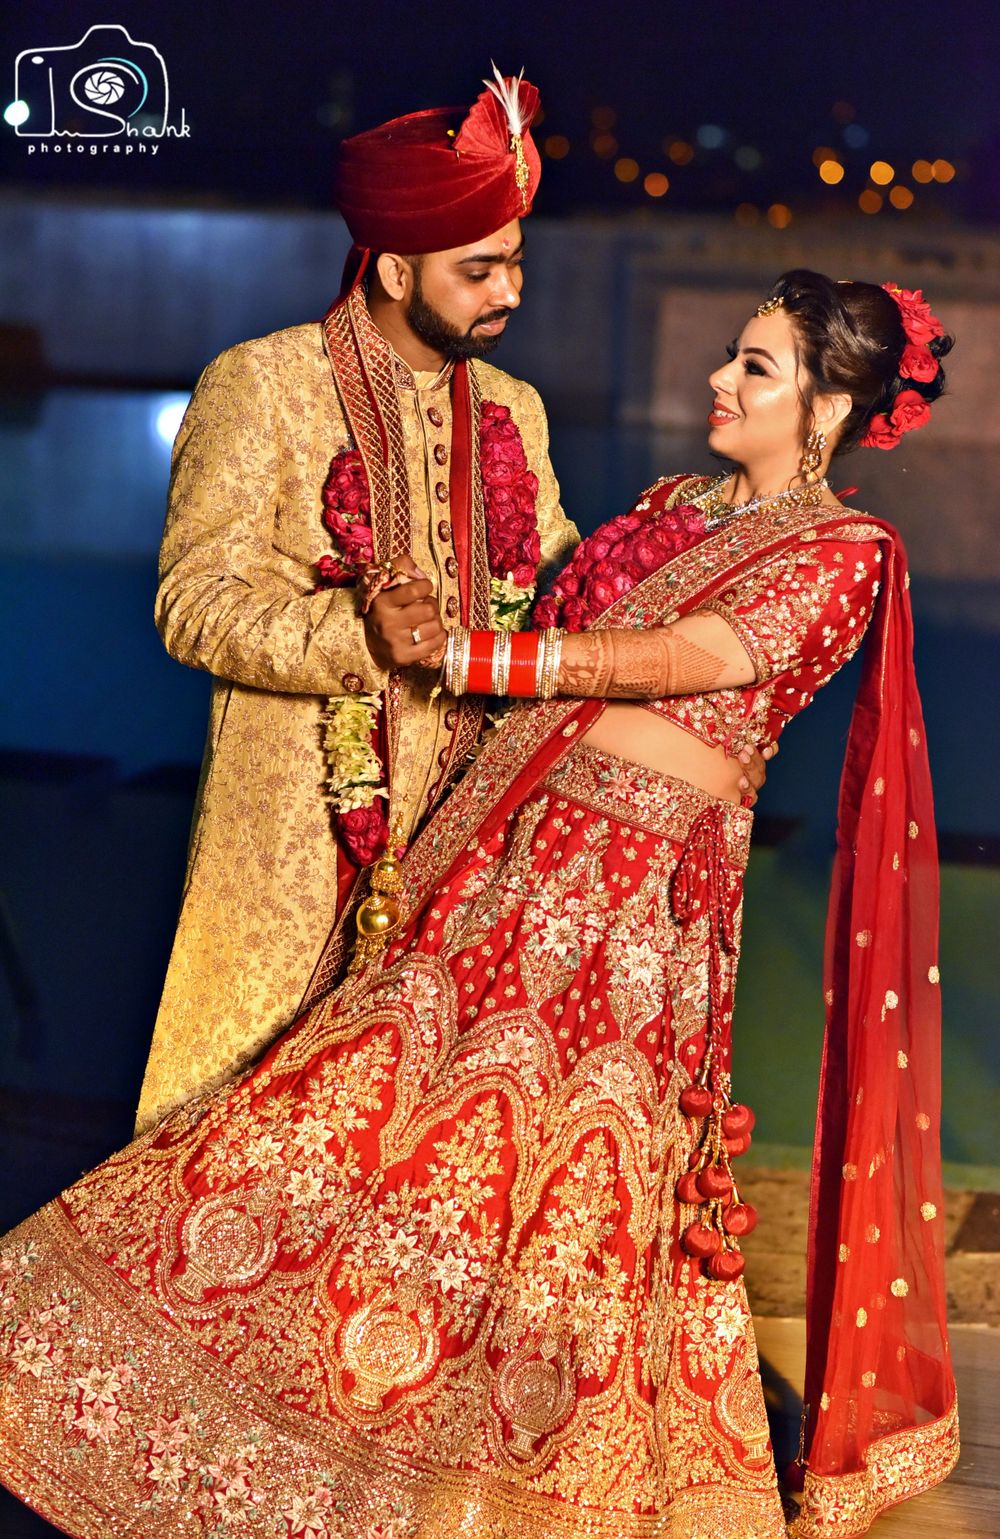 Photo From Purushottam weds Swati - By Ishank Photography